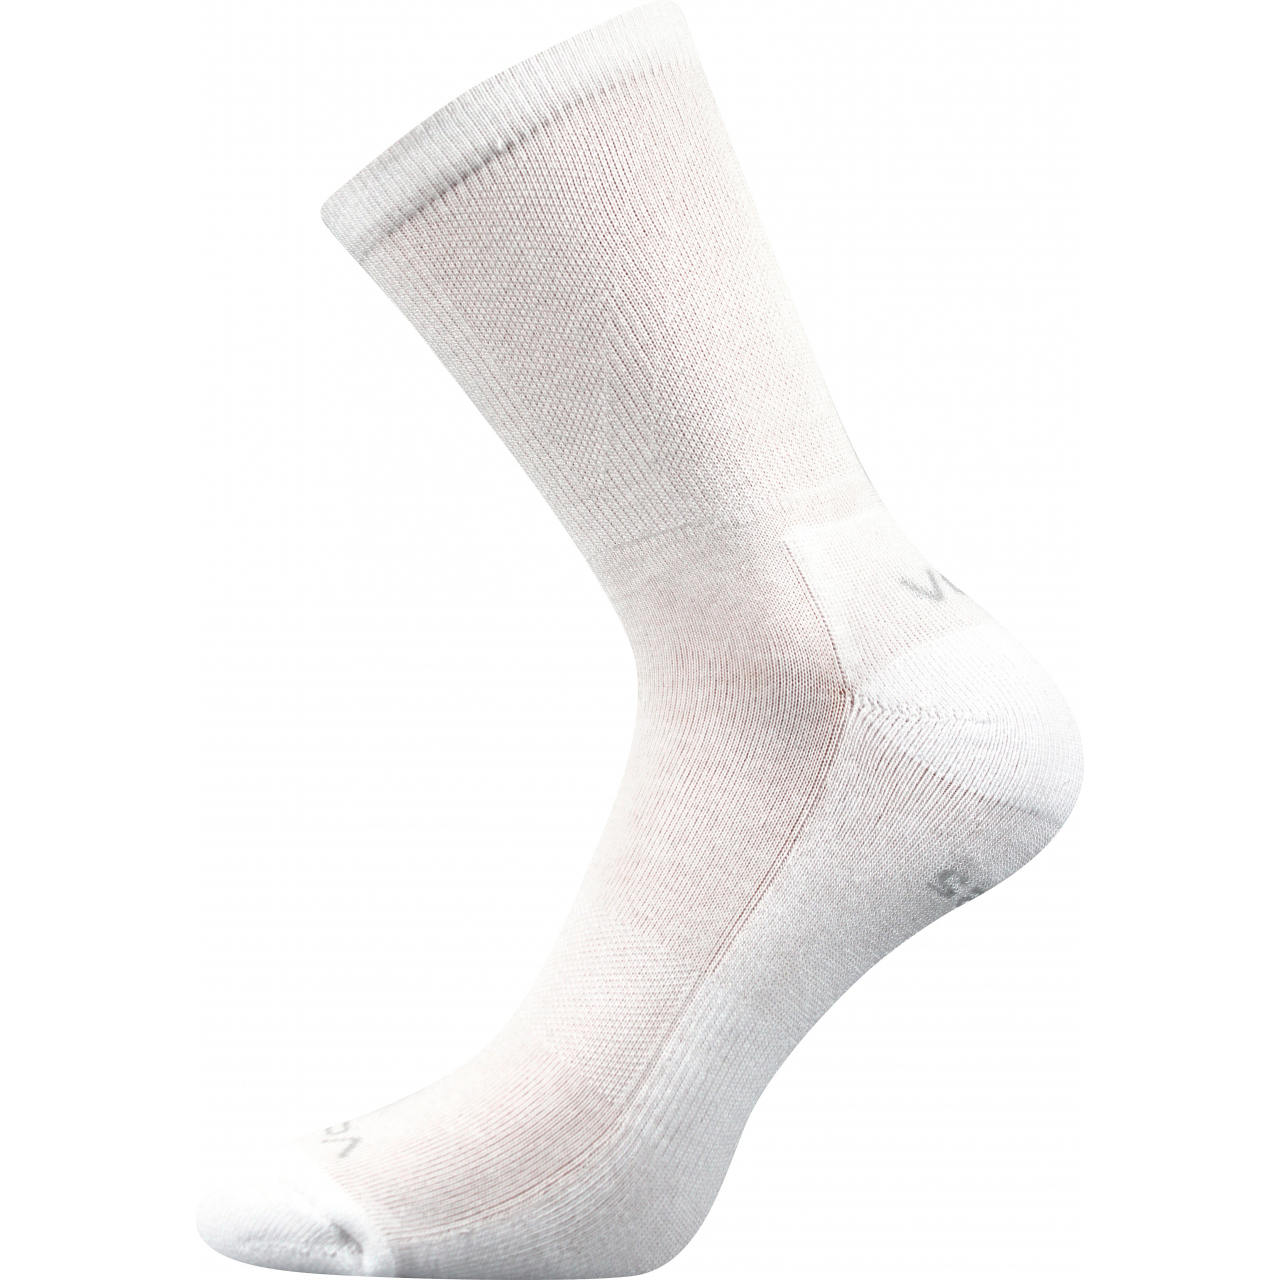 Ponožky sportovní Voxx Kinetic - bílé, 39-42